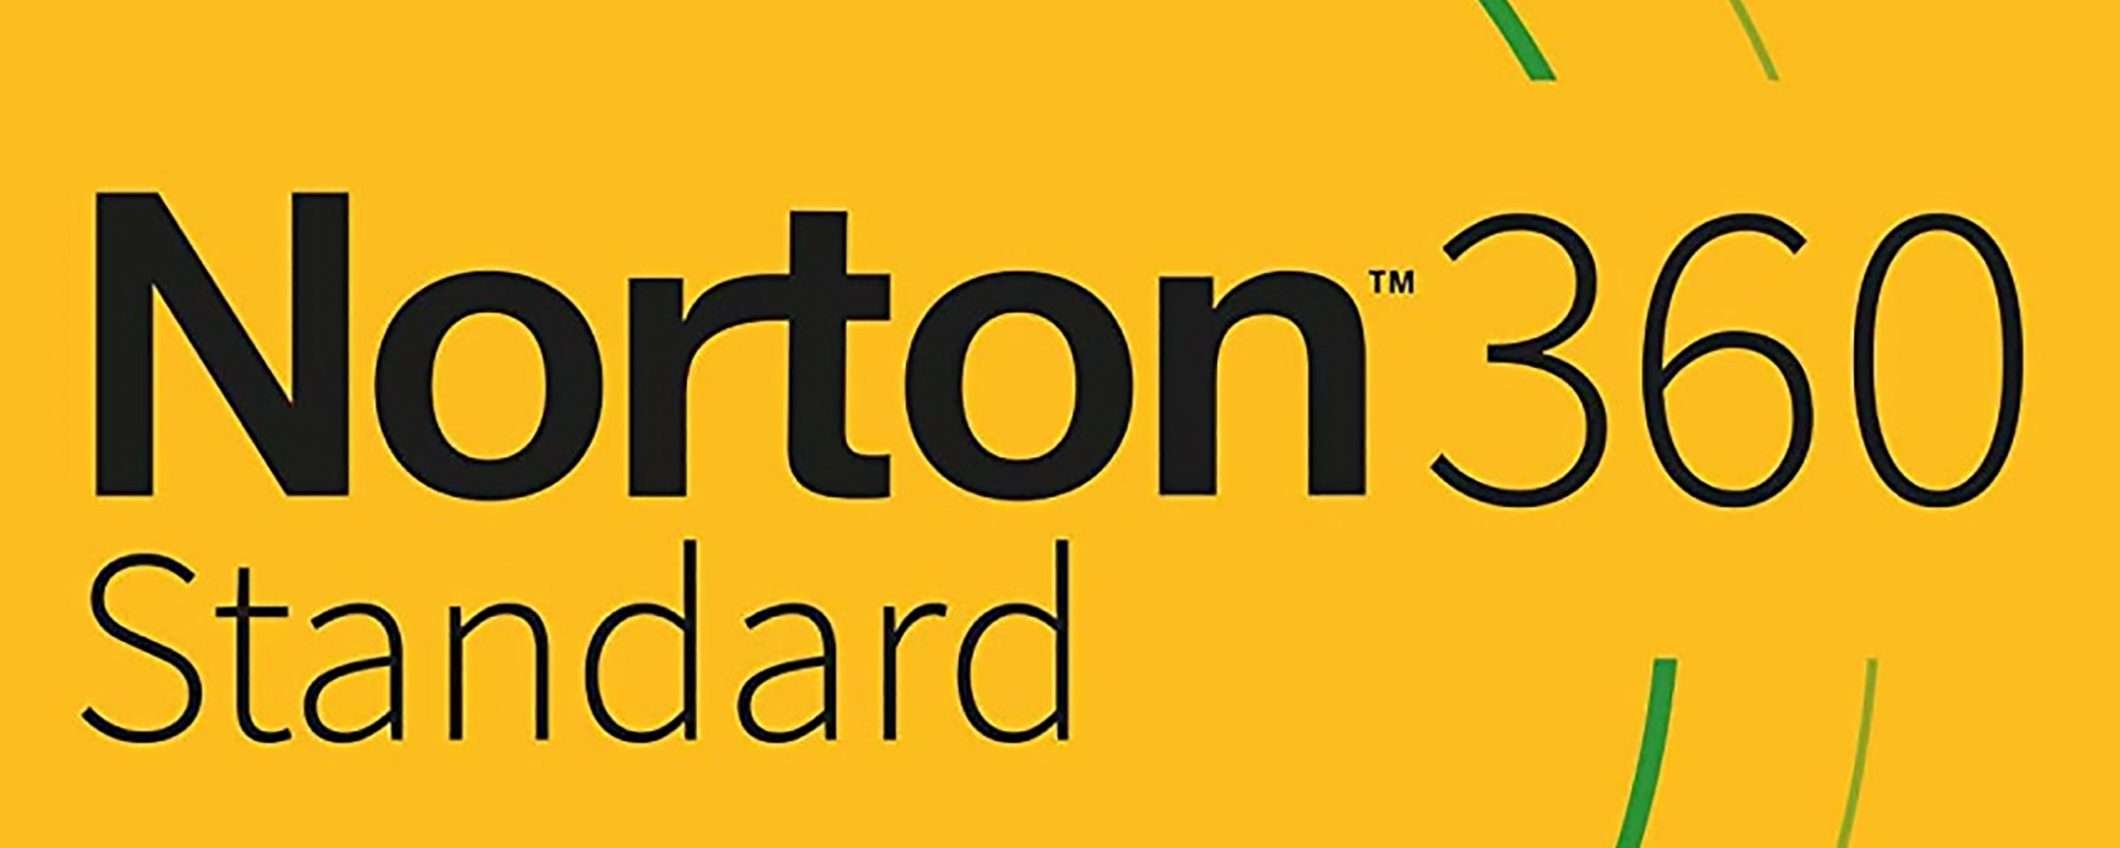 Norton 360 Standard: funzioni, caratteristiche e prezzi